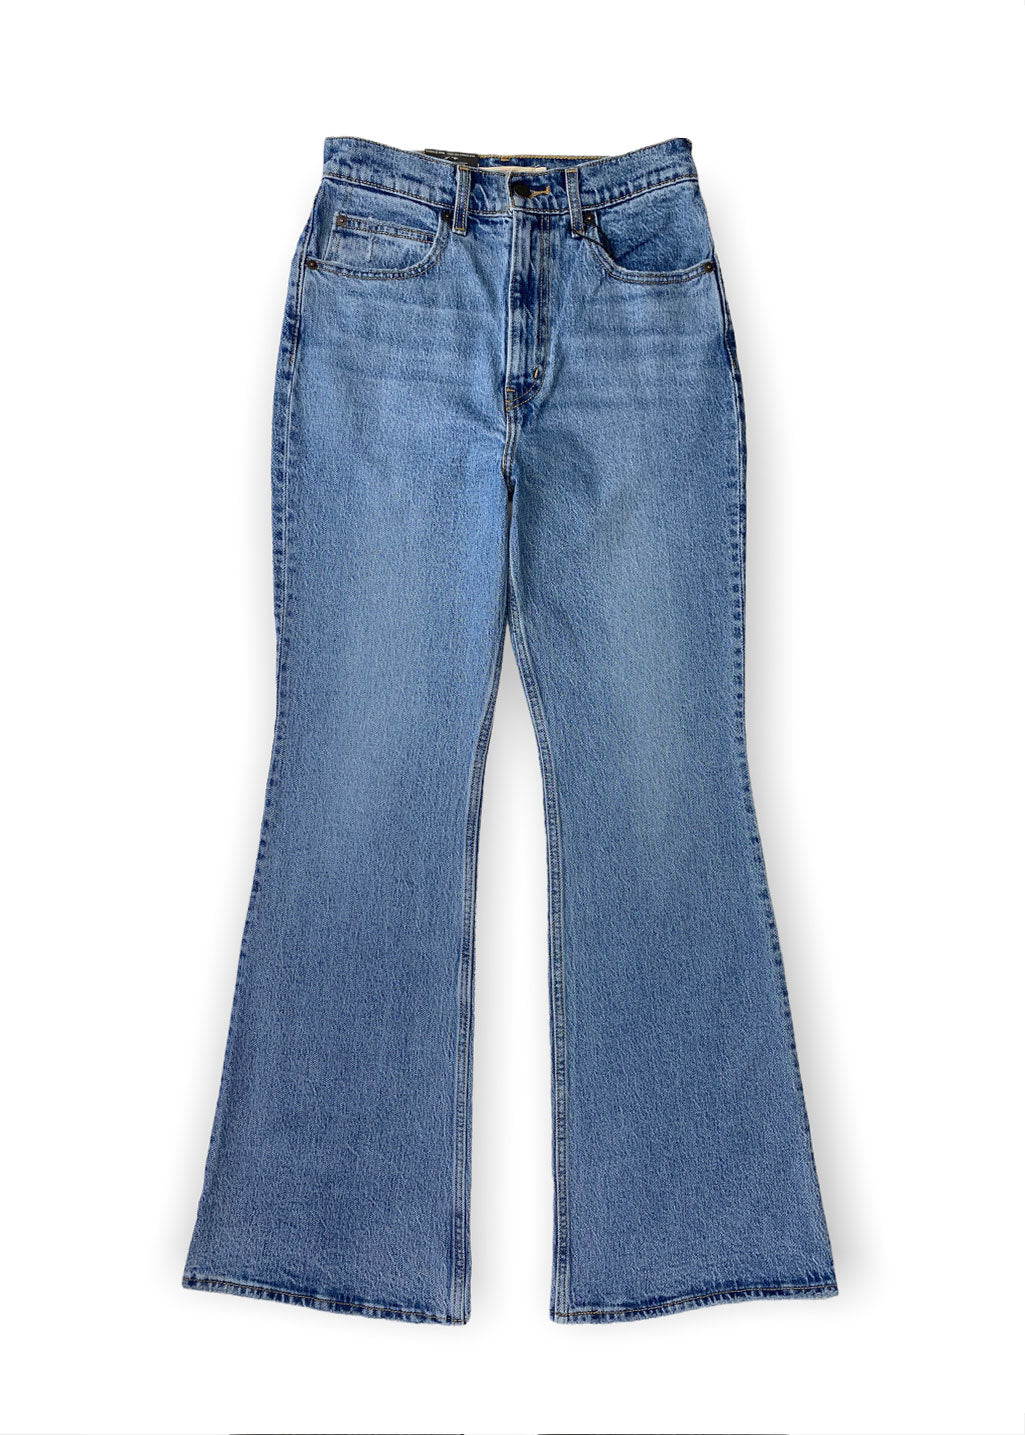 WMNS Jeans Pants Levi's 70s High Flare Sonoma Jeans blue